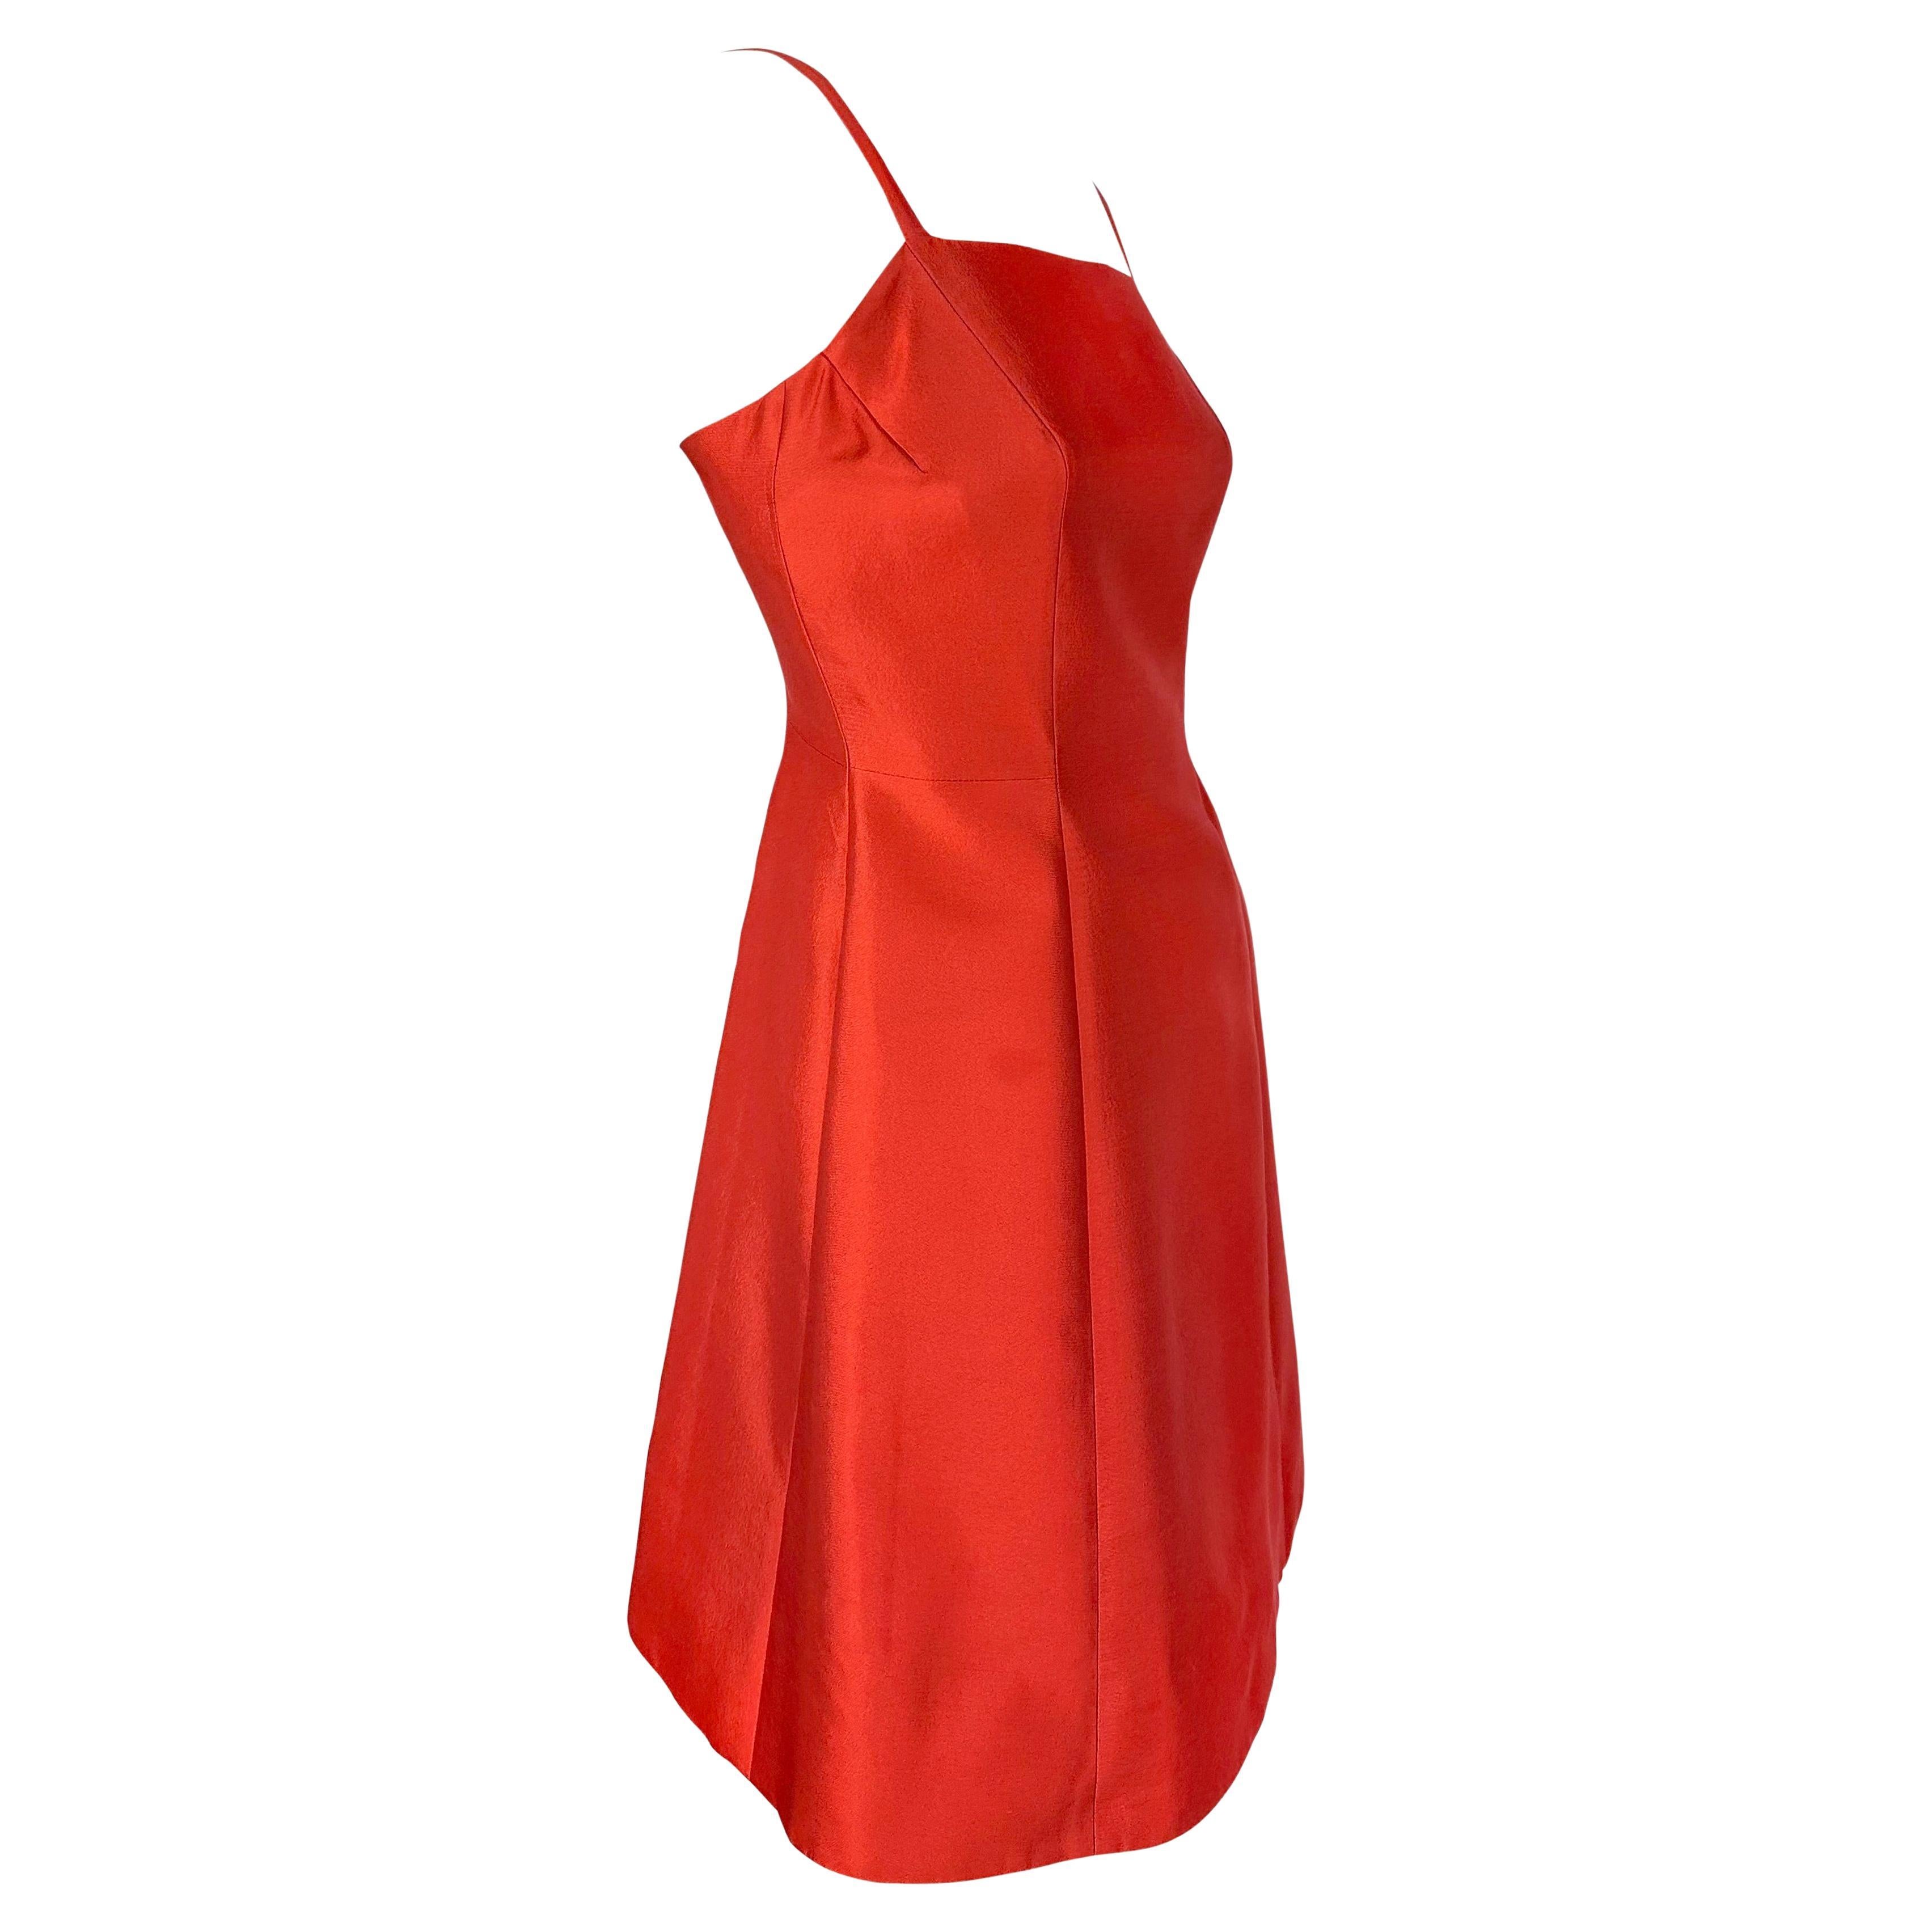 F/W 1995 Prada Kate Moss Runway Red Silk Wool Taffeta Flare Cocktail Dress 2